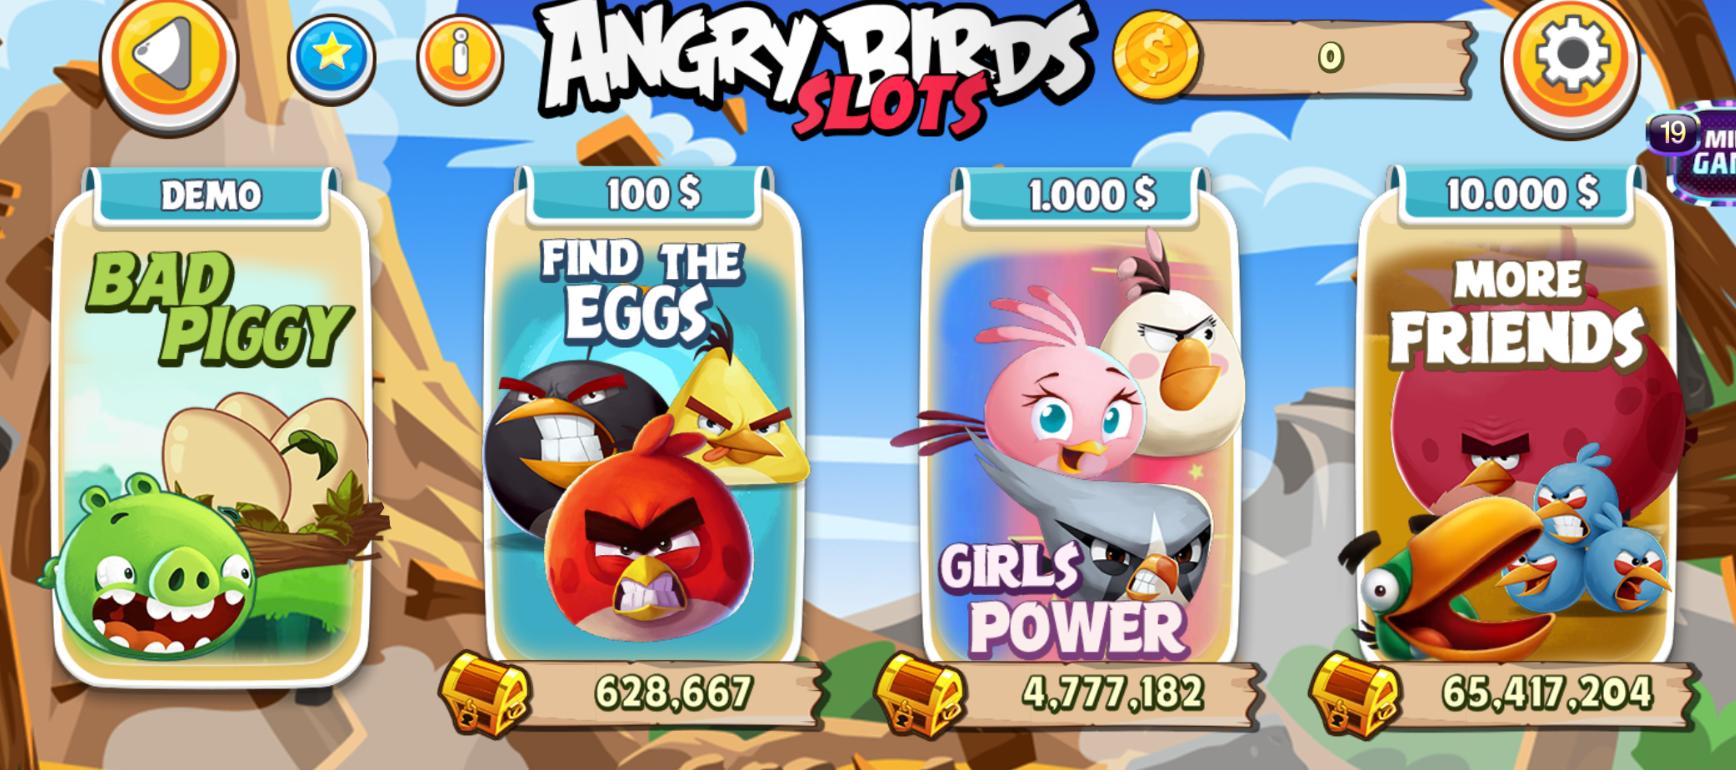 Tại sao nổ hũ Angry Birds lại thu hút nhiều người chơi đến vậy